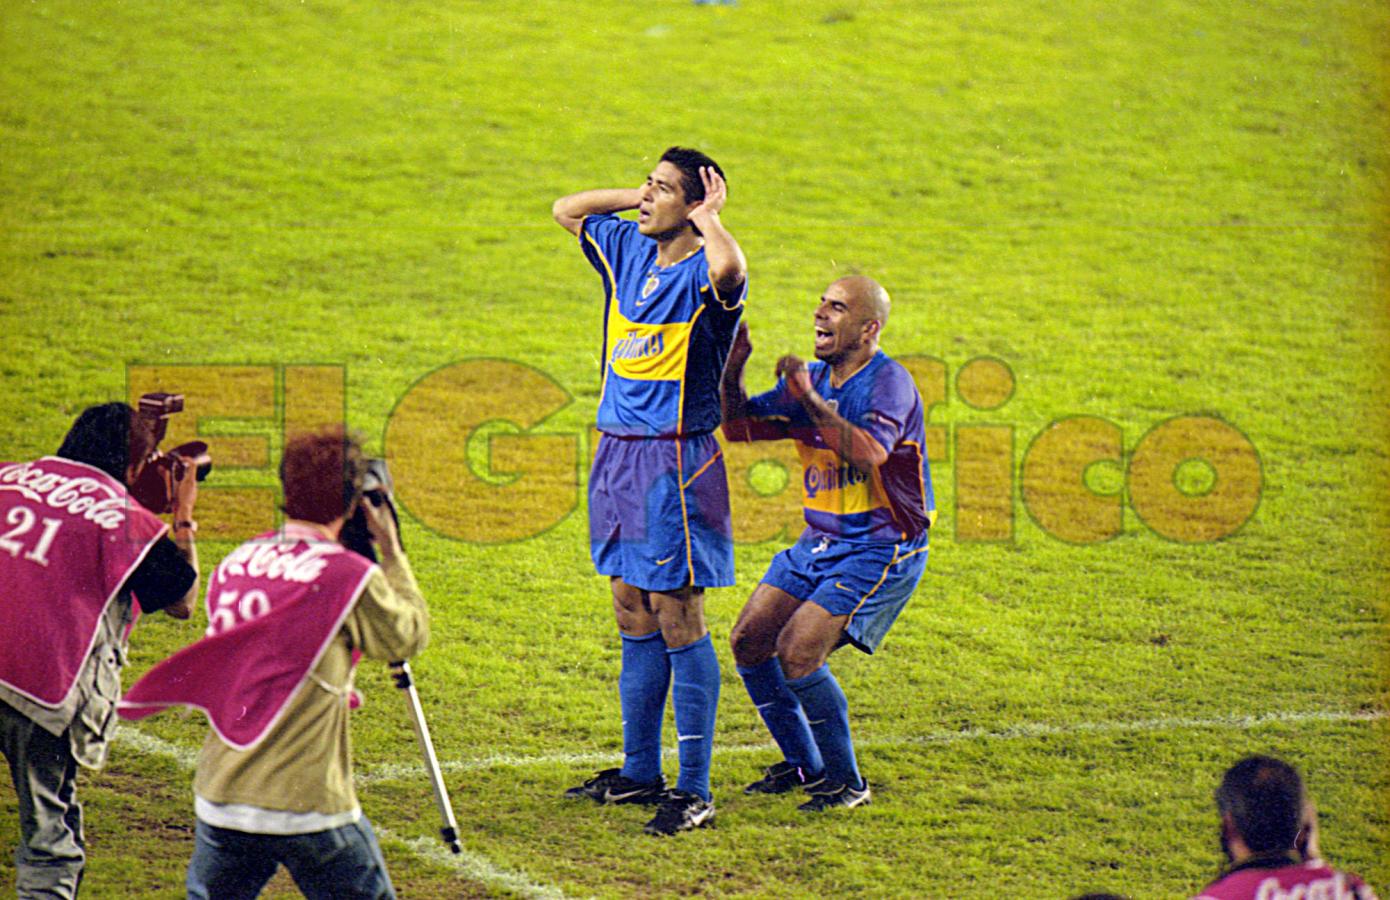 Imagen Juan Román Riquelme y el Topo Gigio (Clausura 2001)